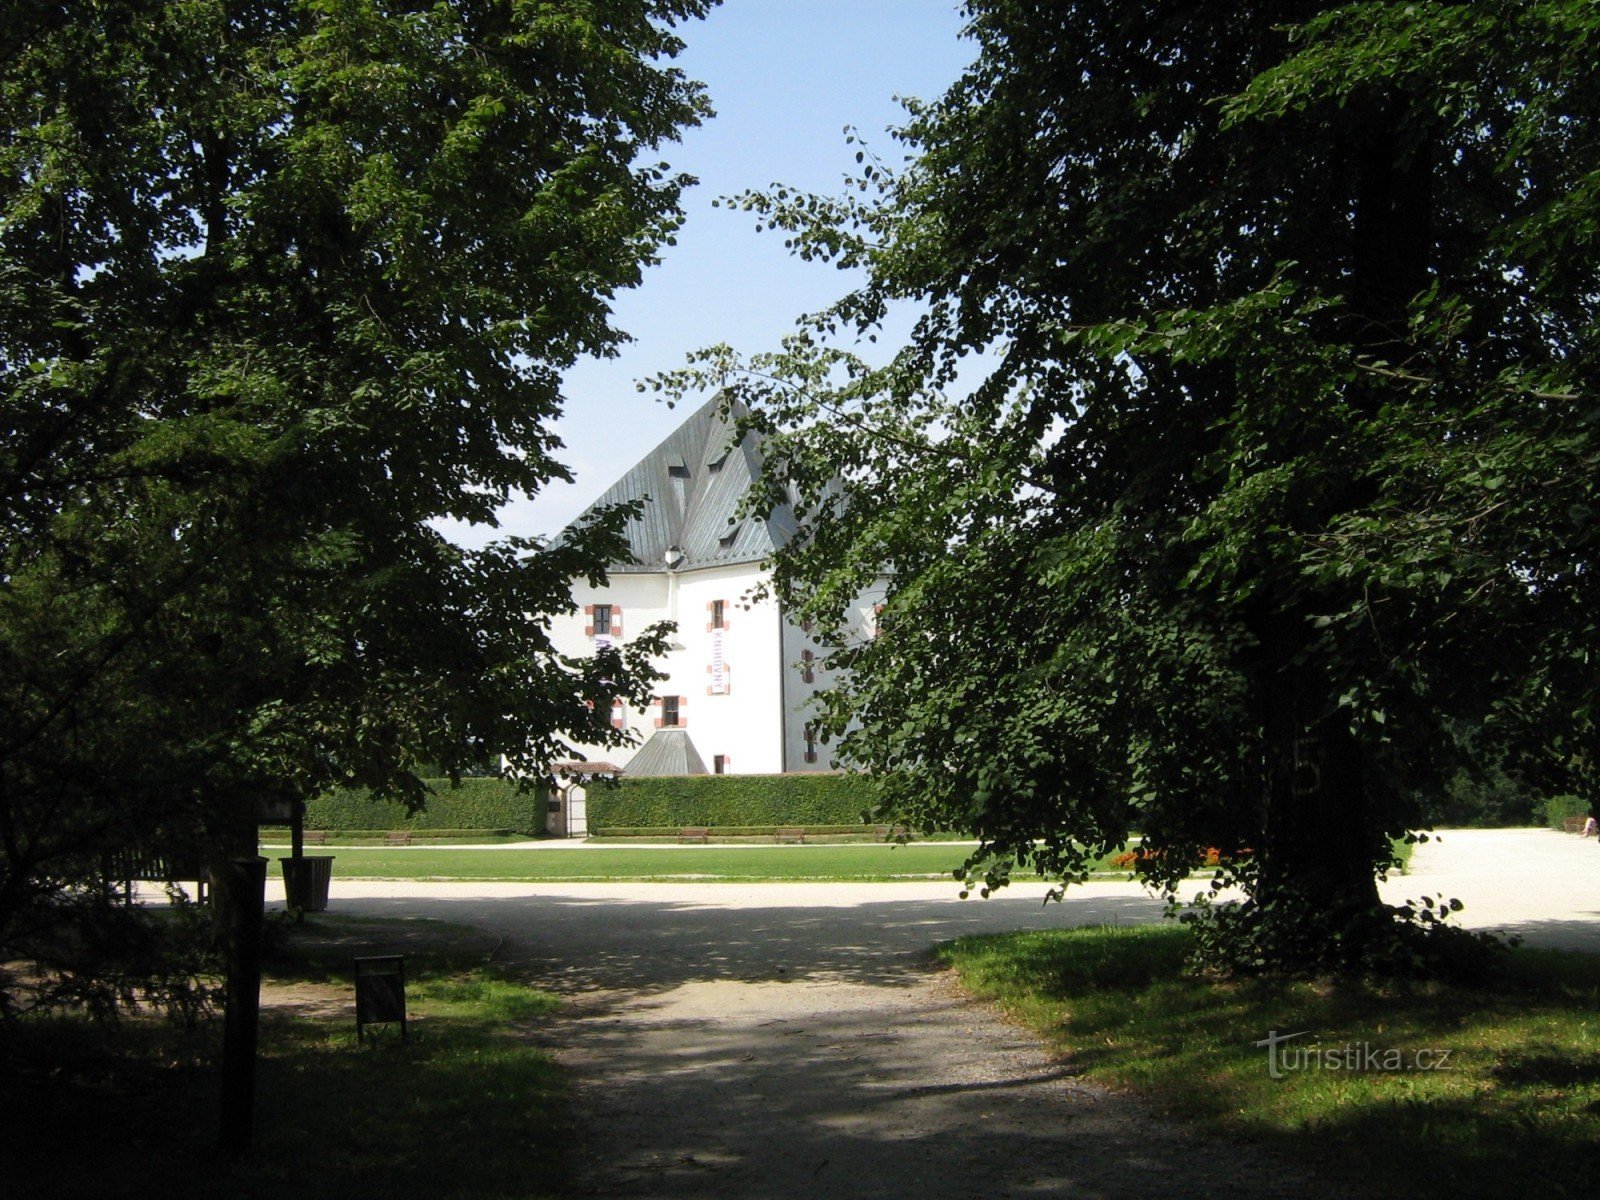 Letohrádek Hvězda and its nature reserve